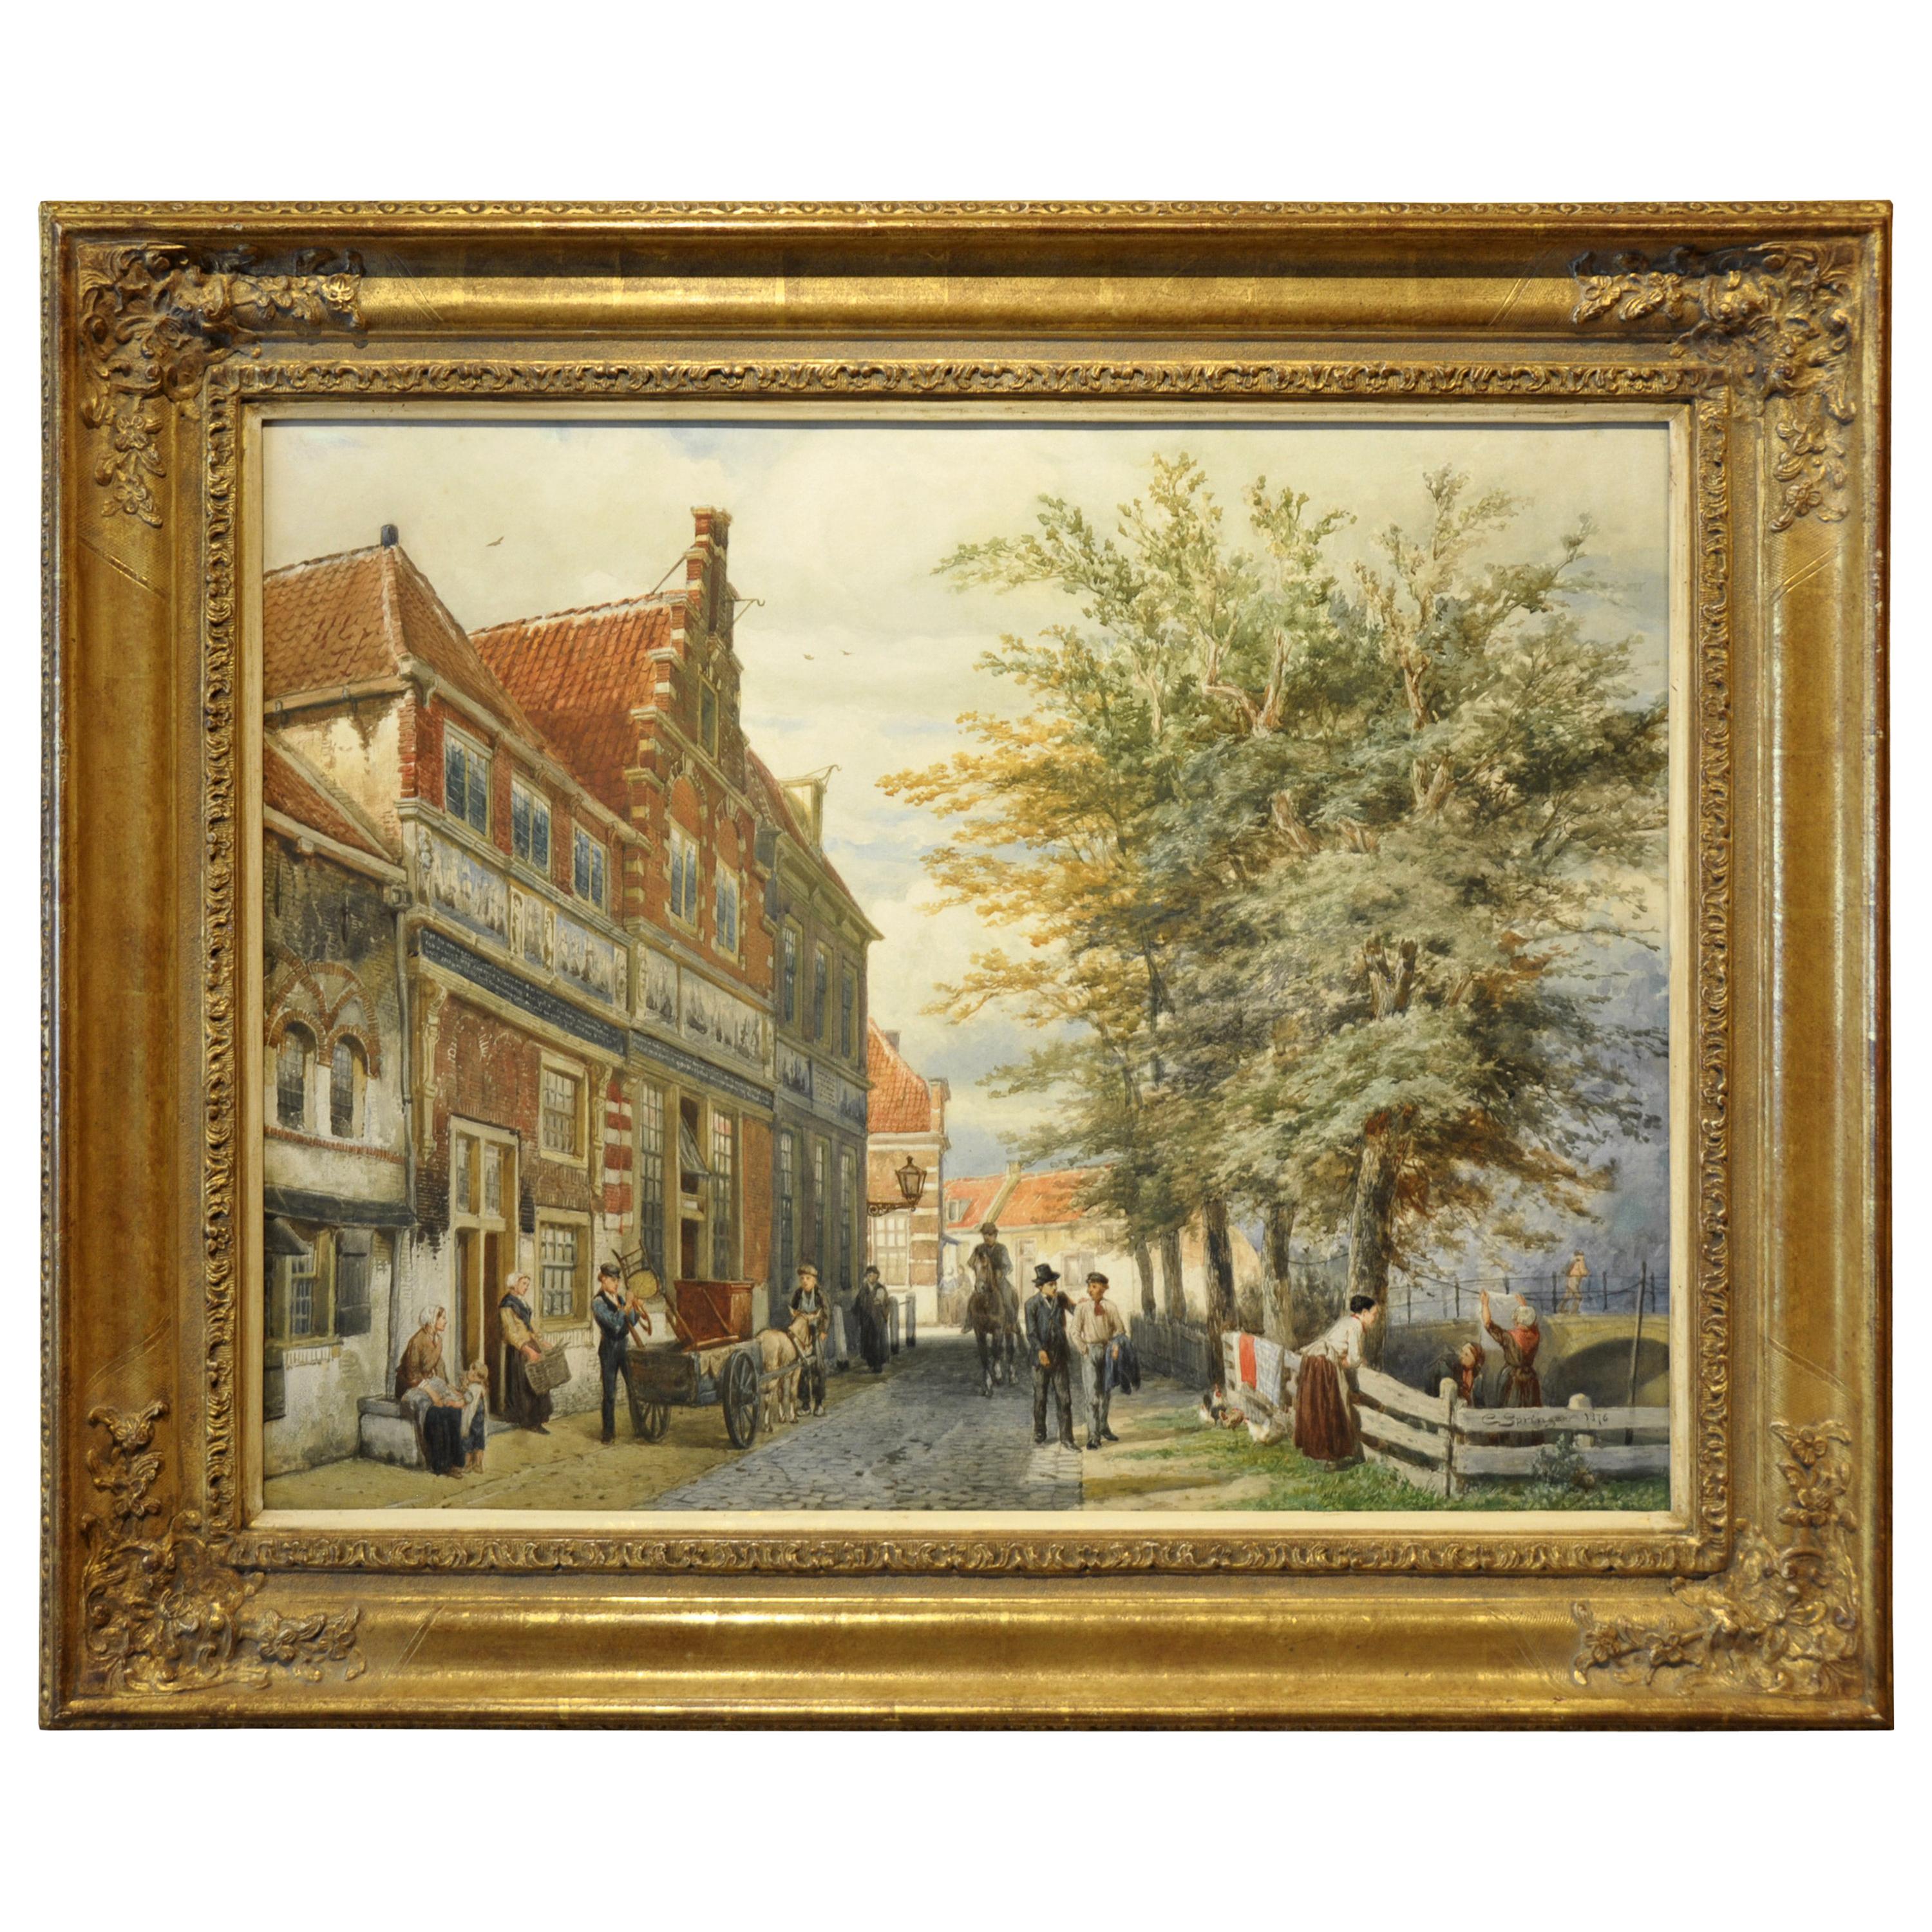 Unique 19th Century Watercolor Painting (67x52cm) by Dutch Painter C. Springer For Sale